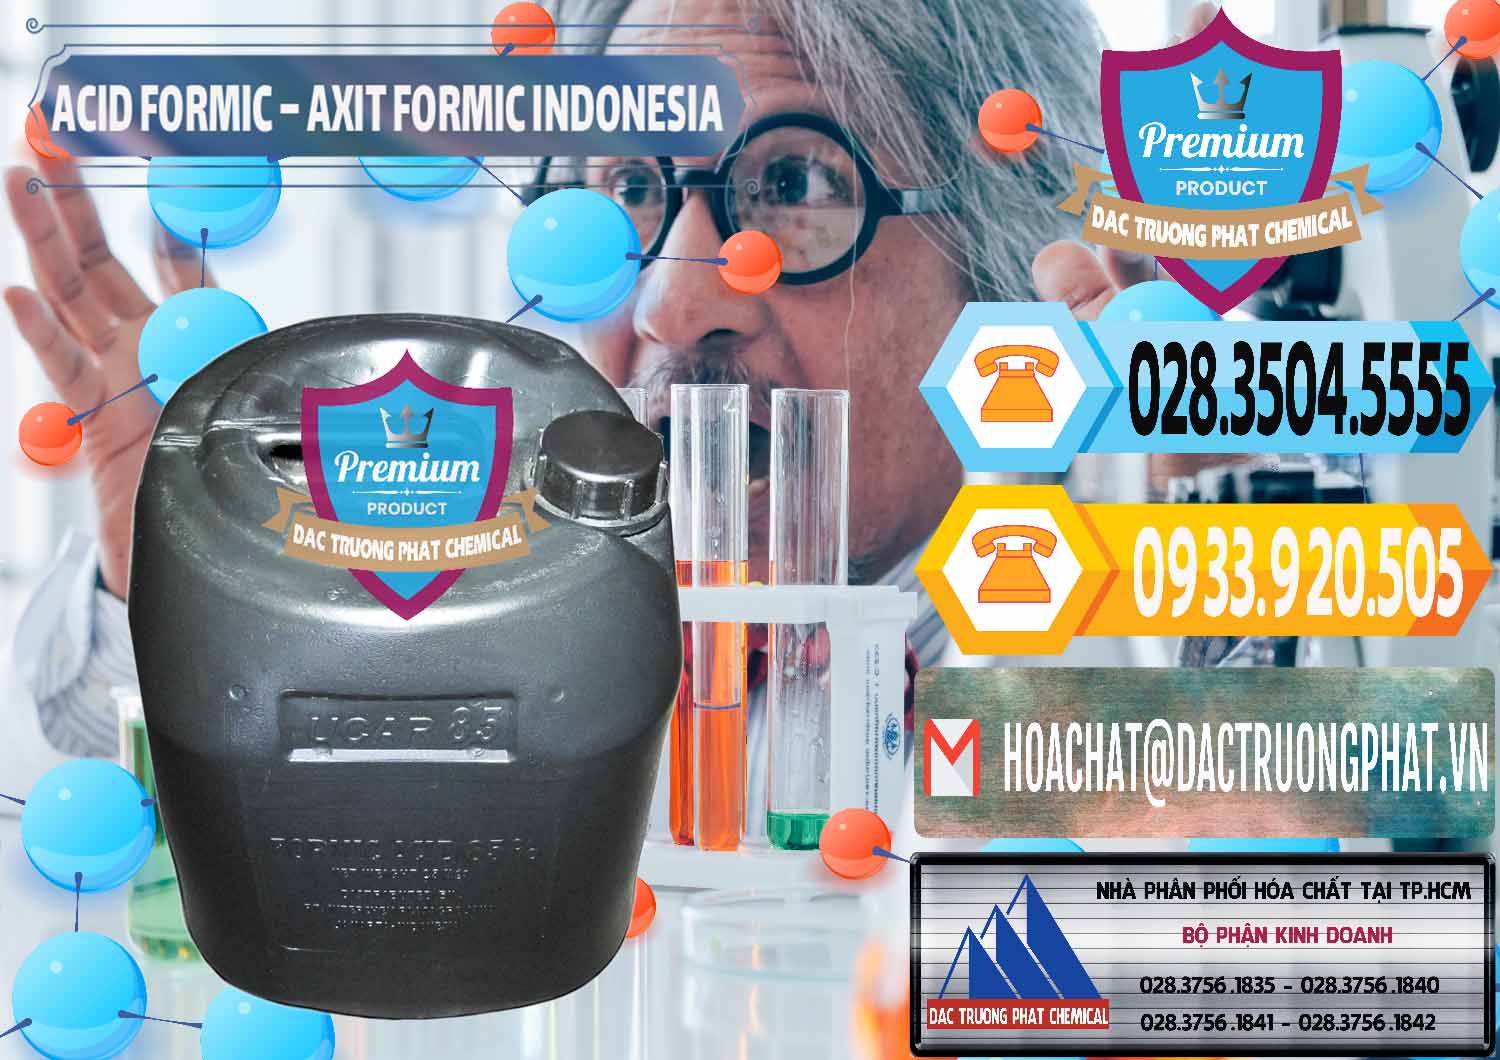 Cty bán ( cung cấp ) Acid Formic - Axit Formic Indonesia - 0026 - Cty cung cấp ( nhập khẩu ) hóa chất tại TP.HCM - hoachattayrua.net